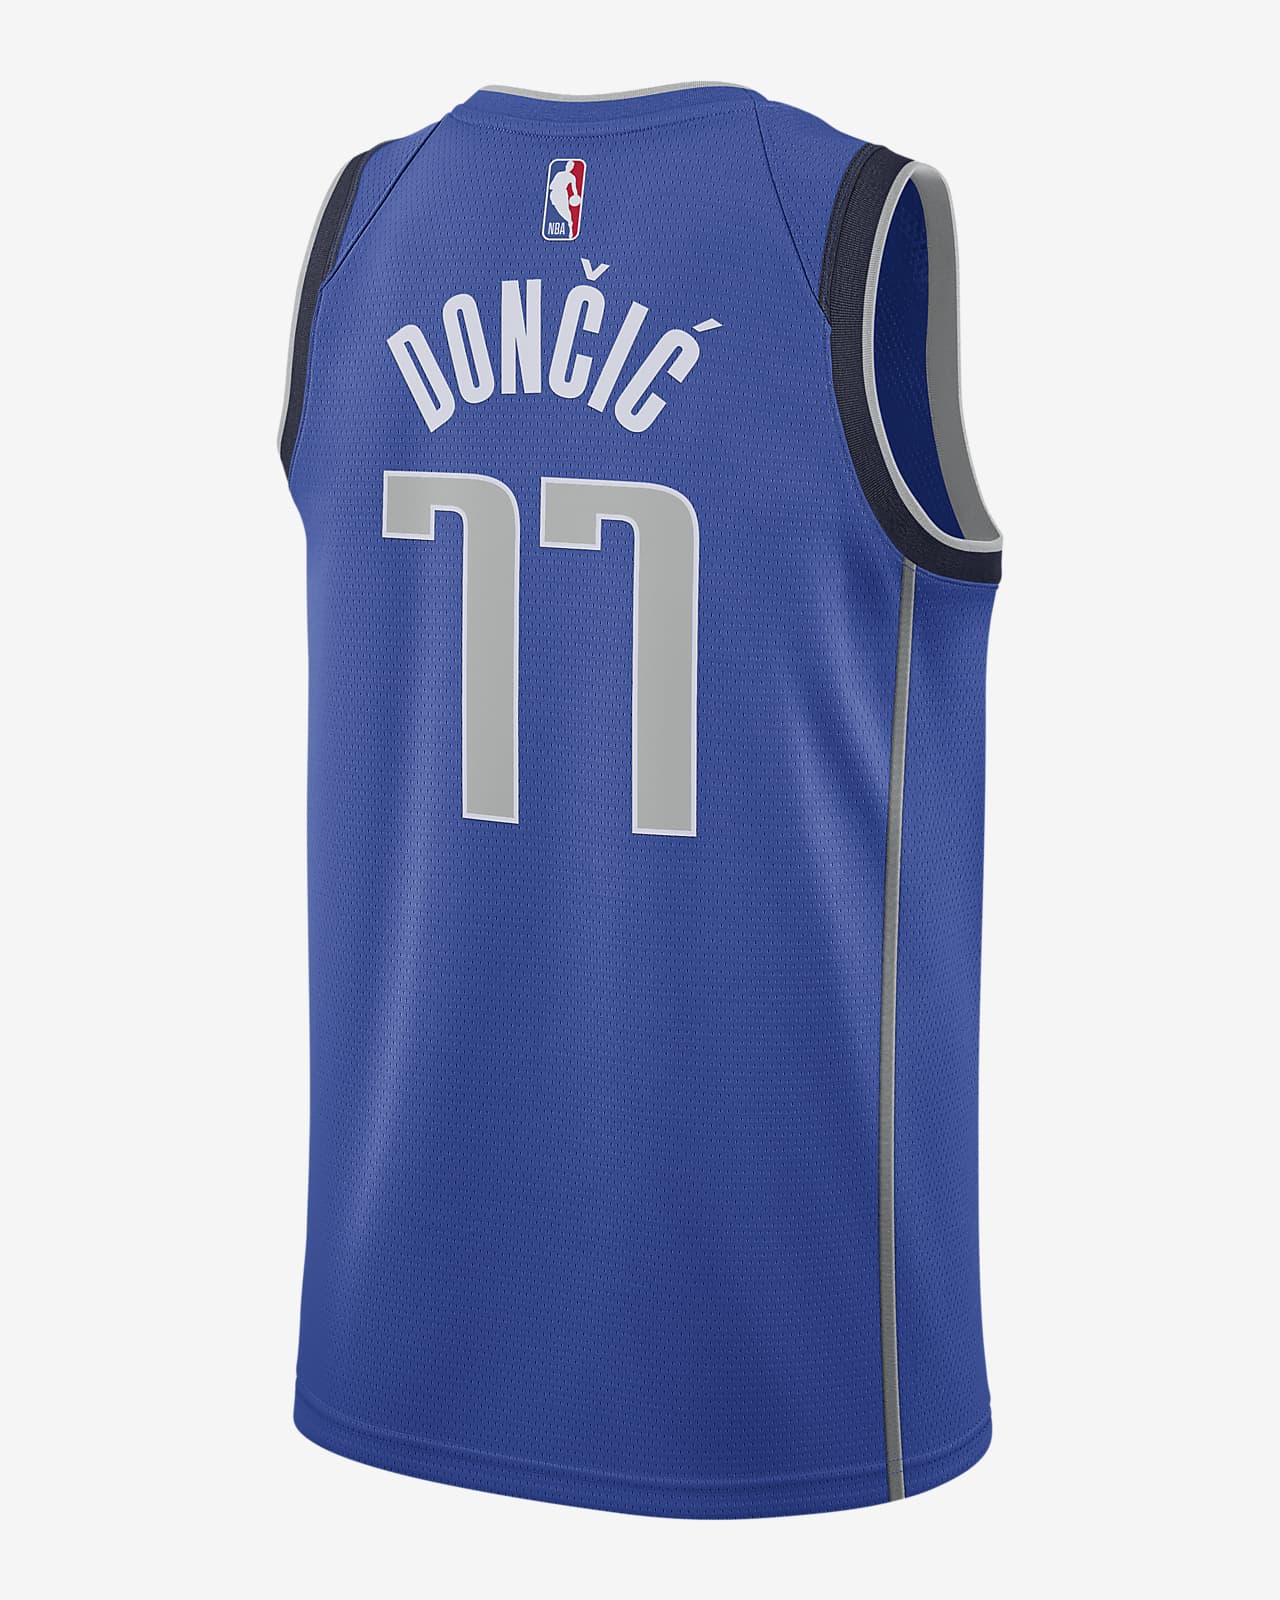 Luka Dončić Mavericks Icon Edition 2020 Camiseta Nike de la NBA Swingman. Nike